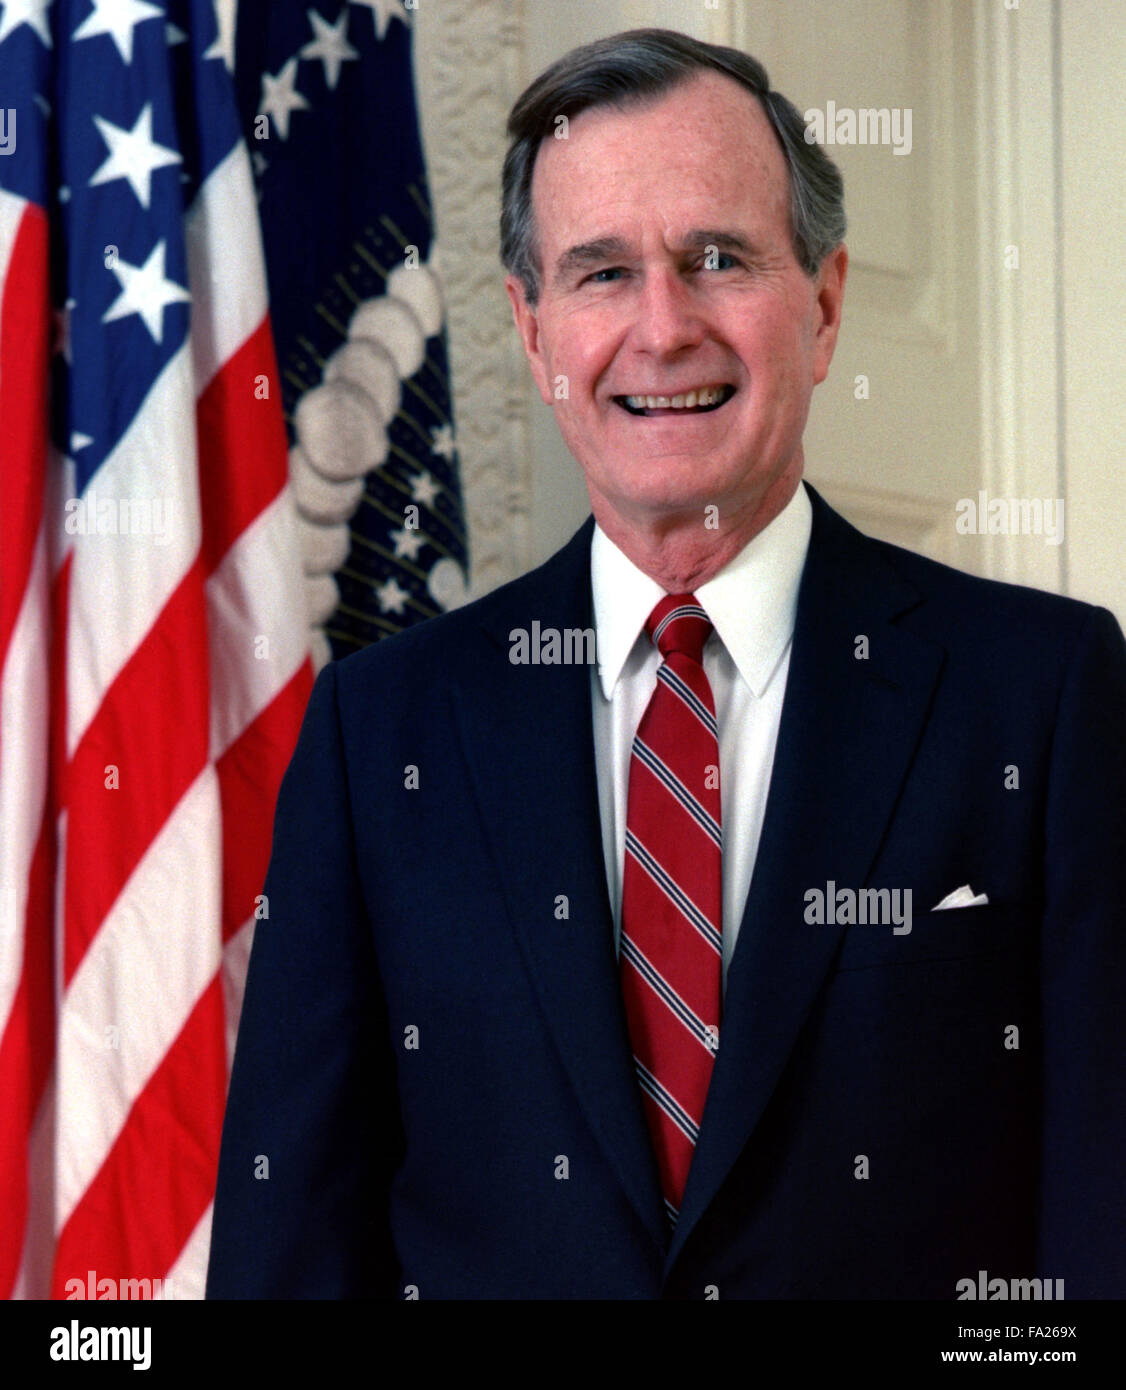 George Herbert Walker Bush (né le 12 juin 1924) homme politique américain qui fut le 41e président des États-Unis de 1989 à 1993 Banque D'Images